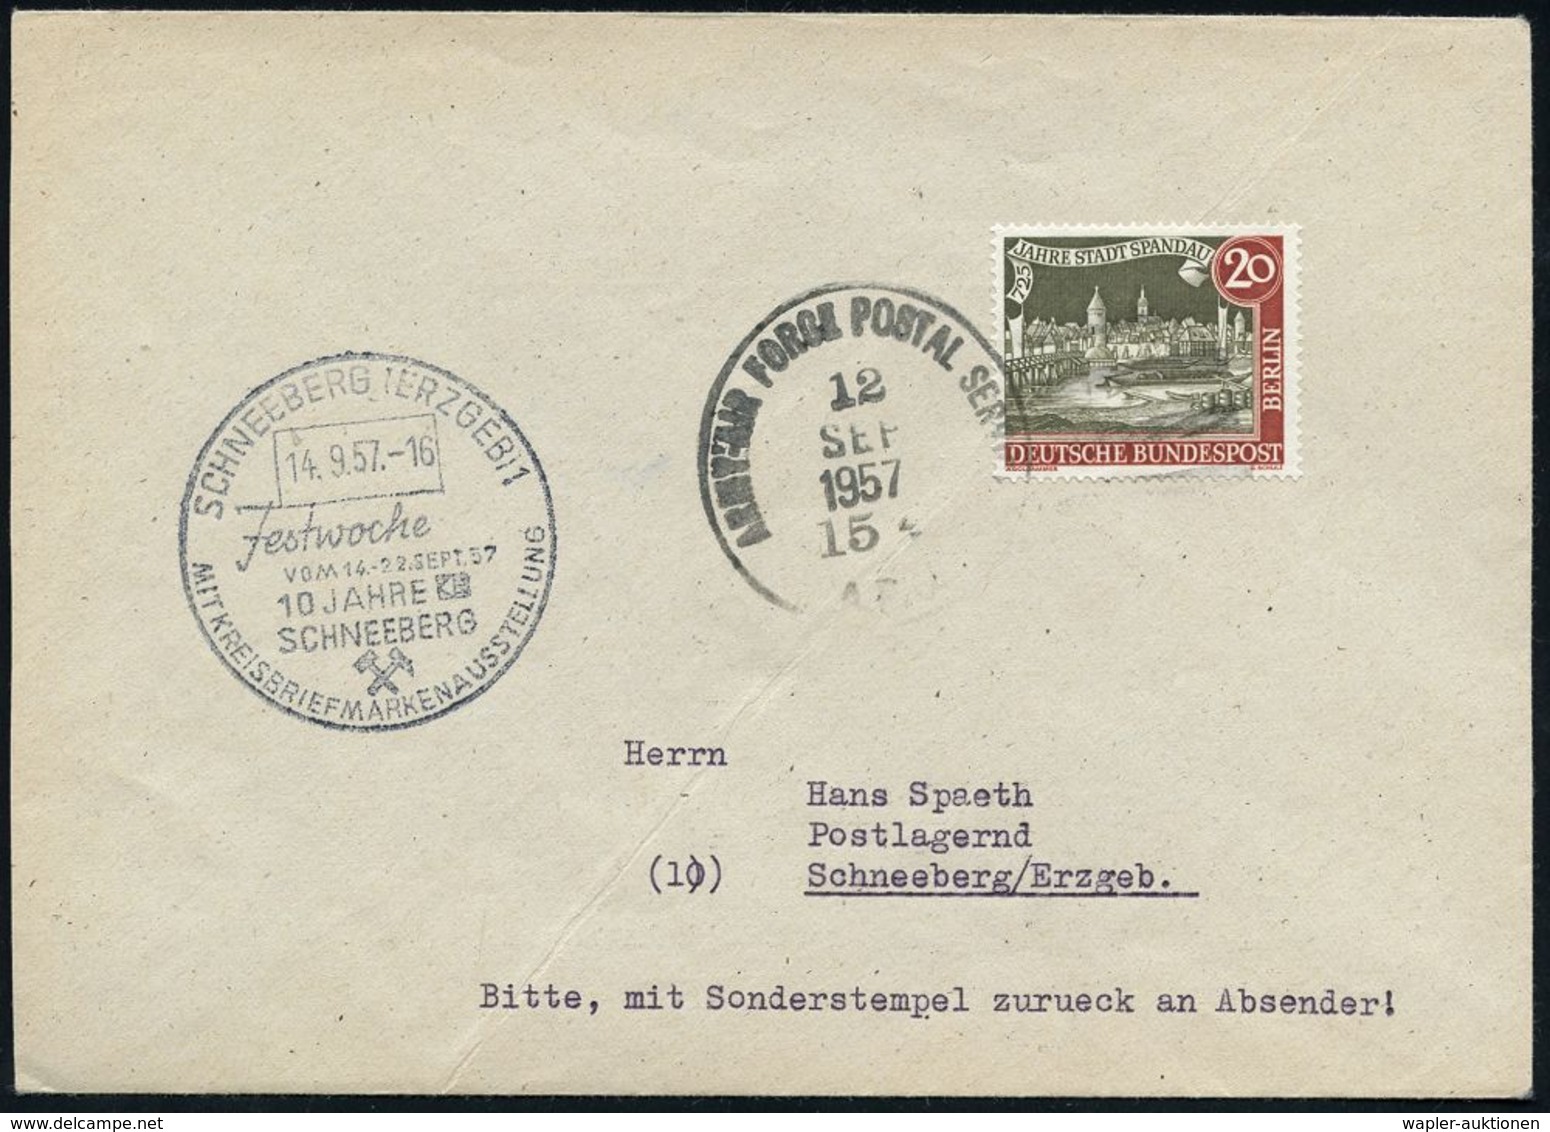 DIE ALLIIERTEN SIEGERMÄCHTE DES II.WELTKRIEGES: U.S.A. / U.D.S.S.R. / GROSSBRITANNIEN / FRANKREICH Etc. : Stuttgart 1957 - WW2